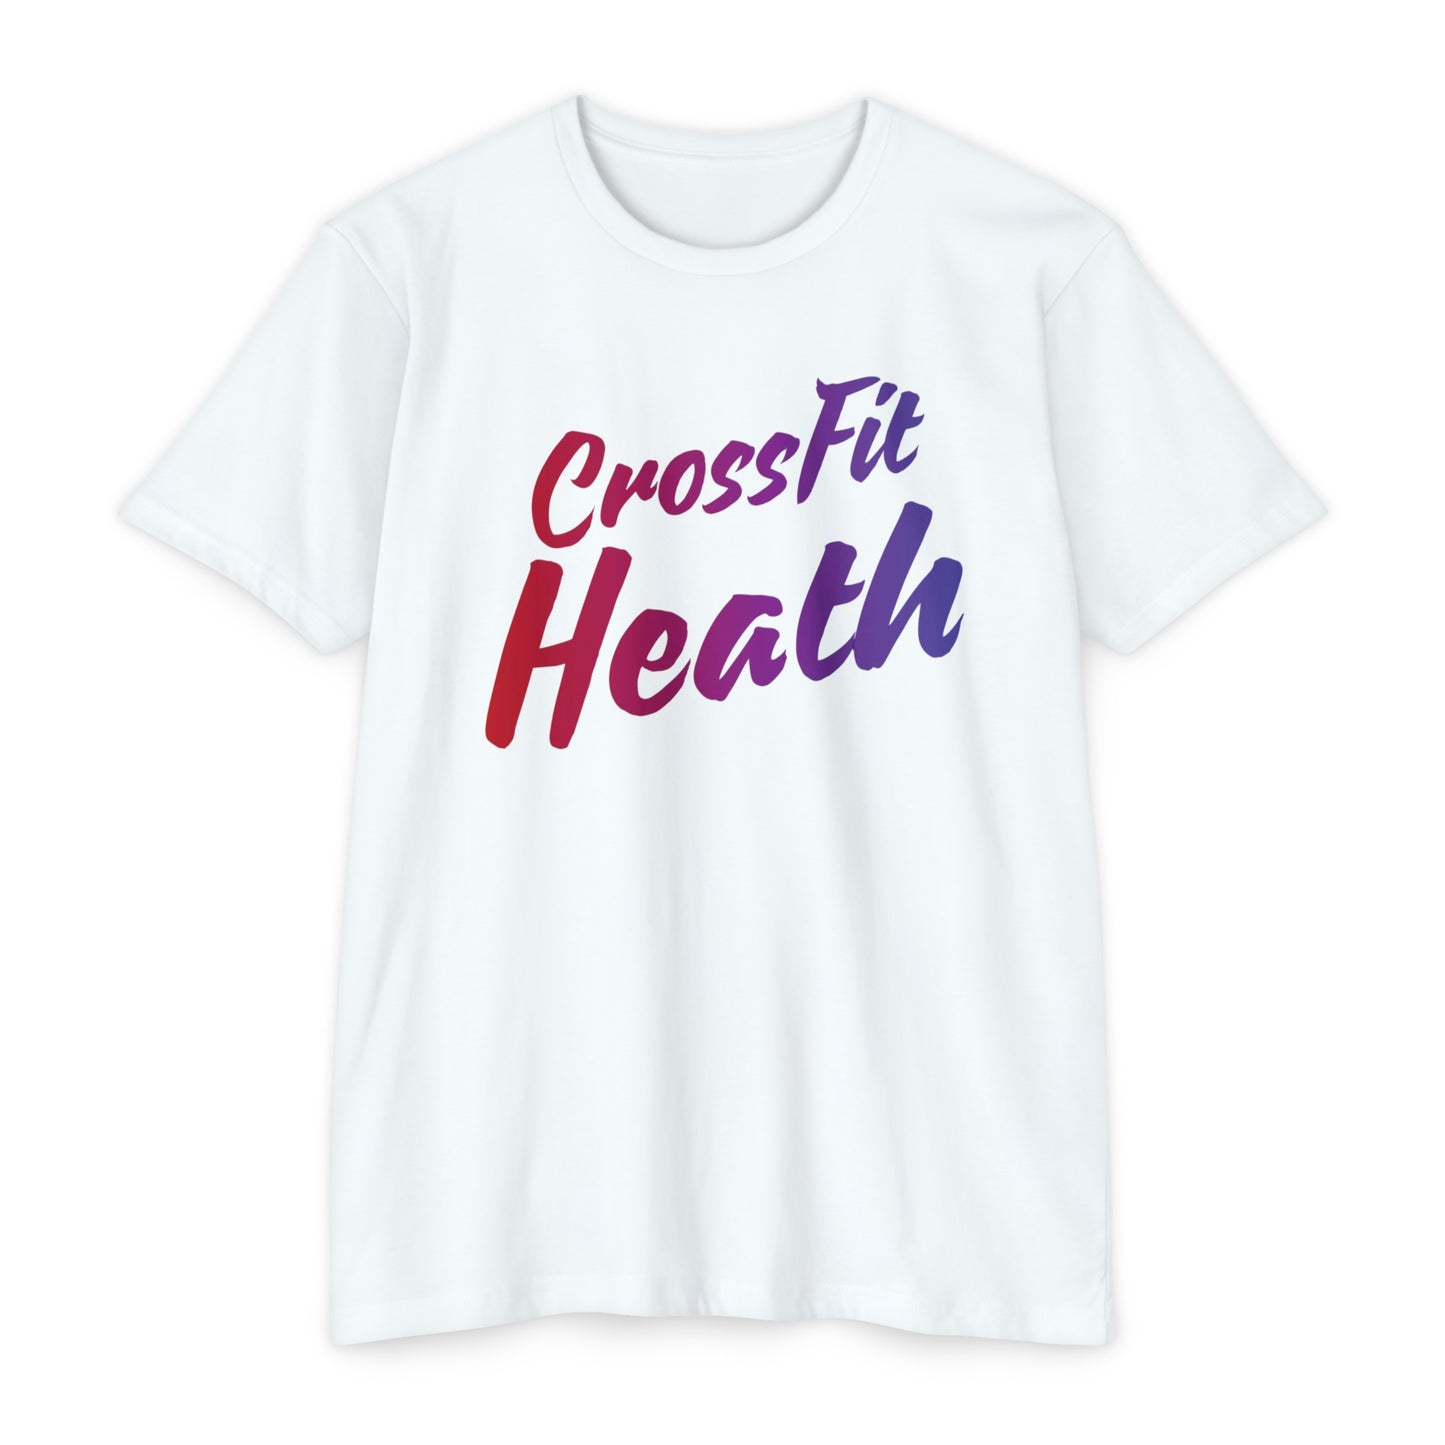 CrossFit Heath Color Fade logo